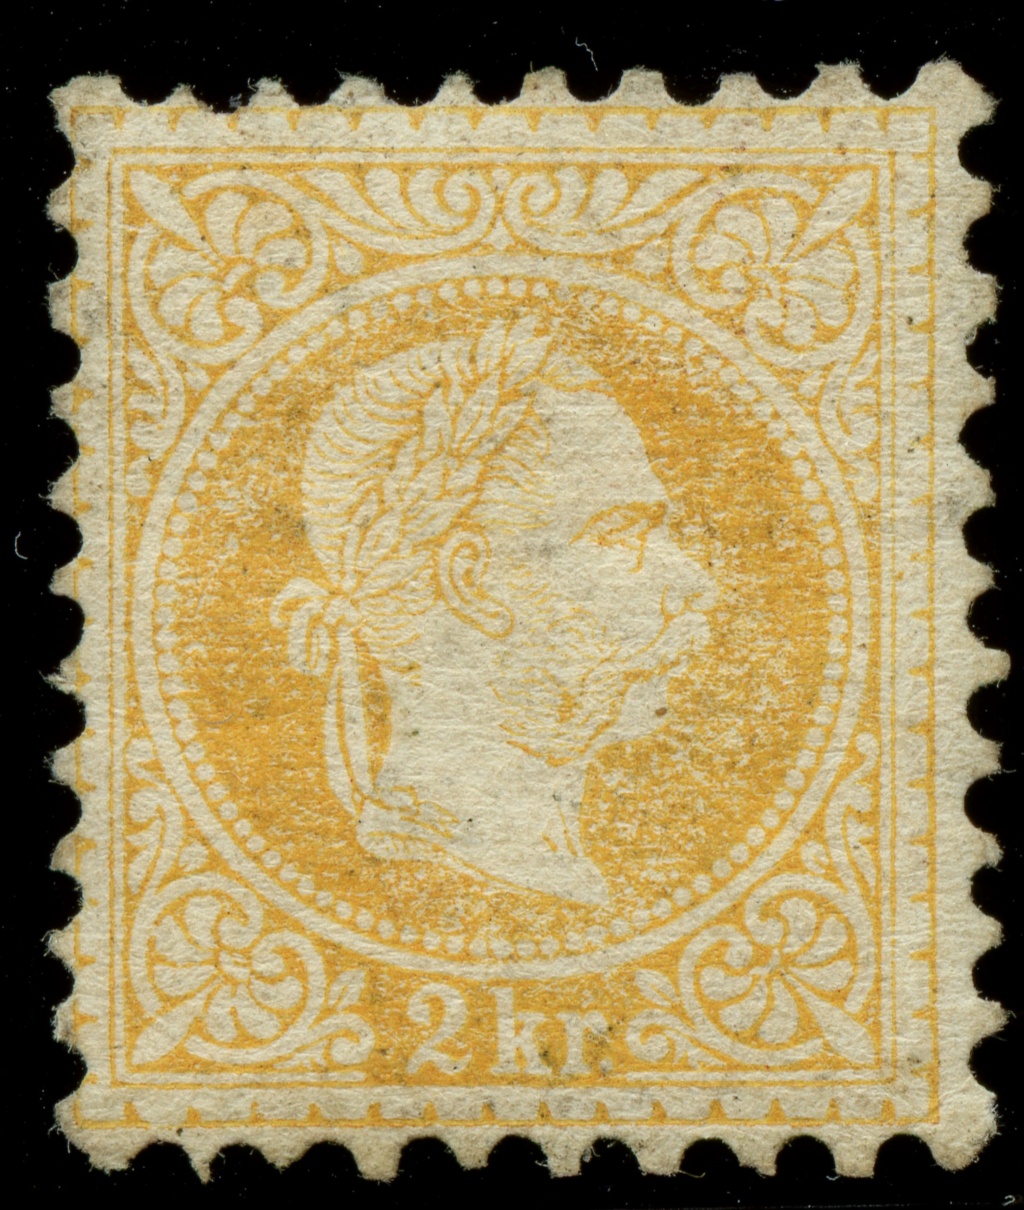 Freimarken-Ausgabe 1867 : Kopfbildnis Kaiser Franz Joseph I - Seite 23 Ank_3522